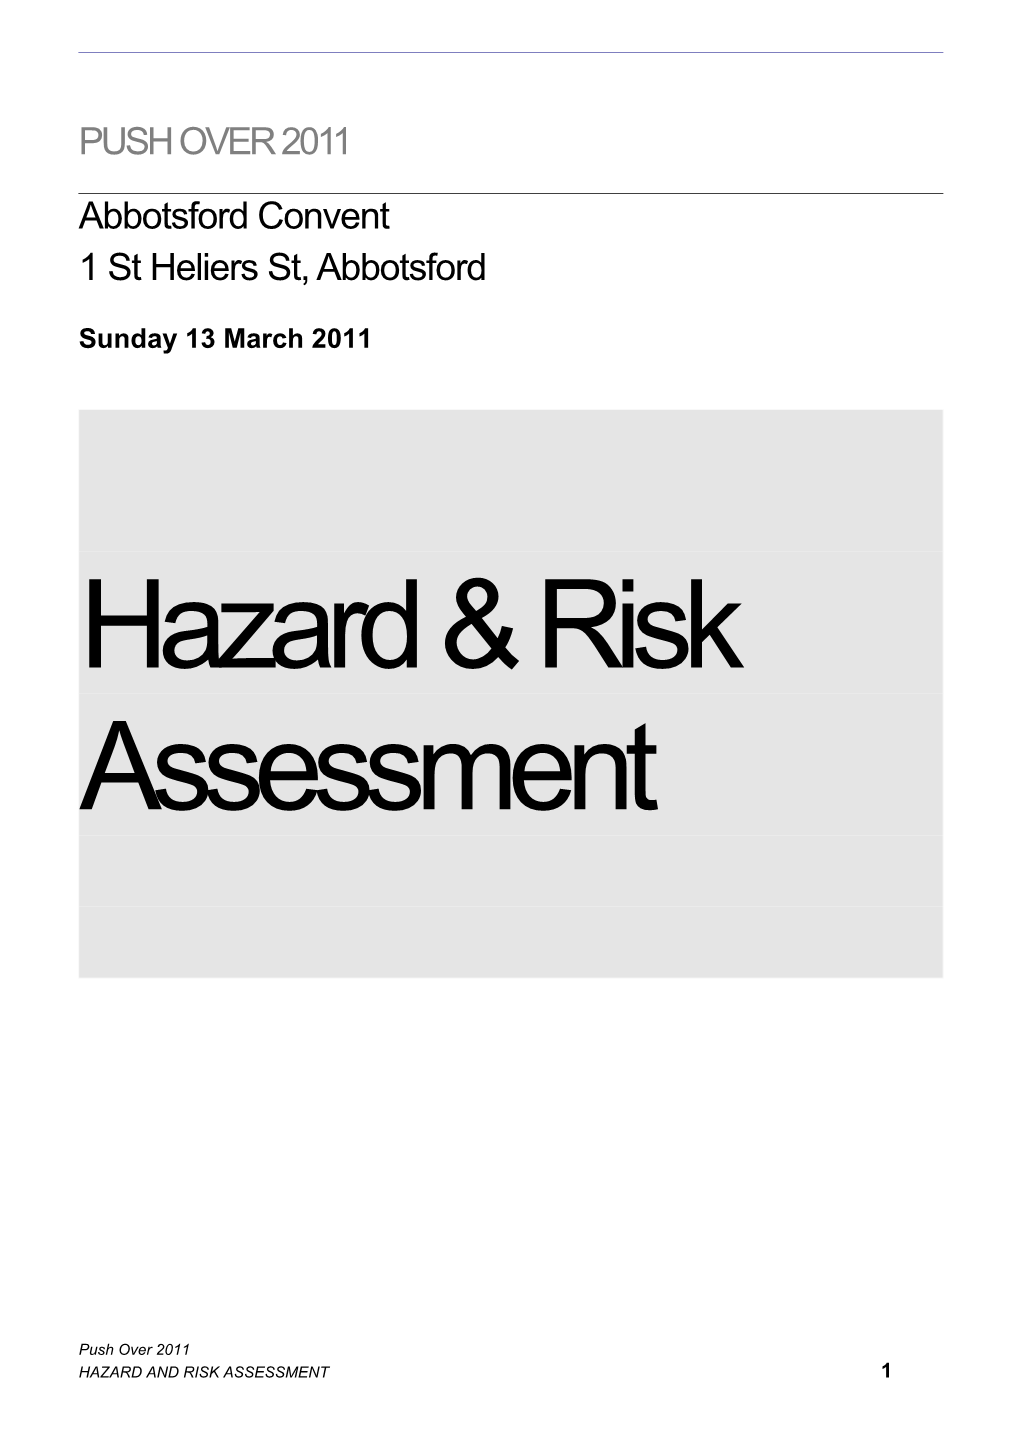 2011 Push Over Hazard & Risk Assessment